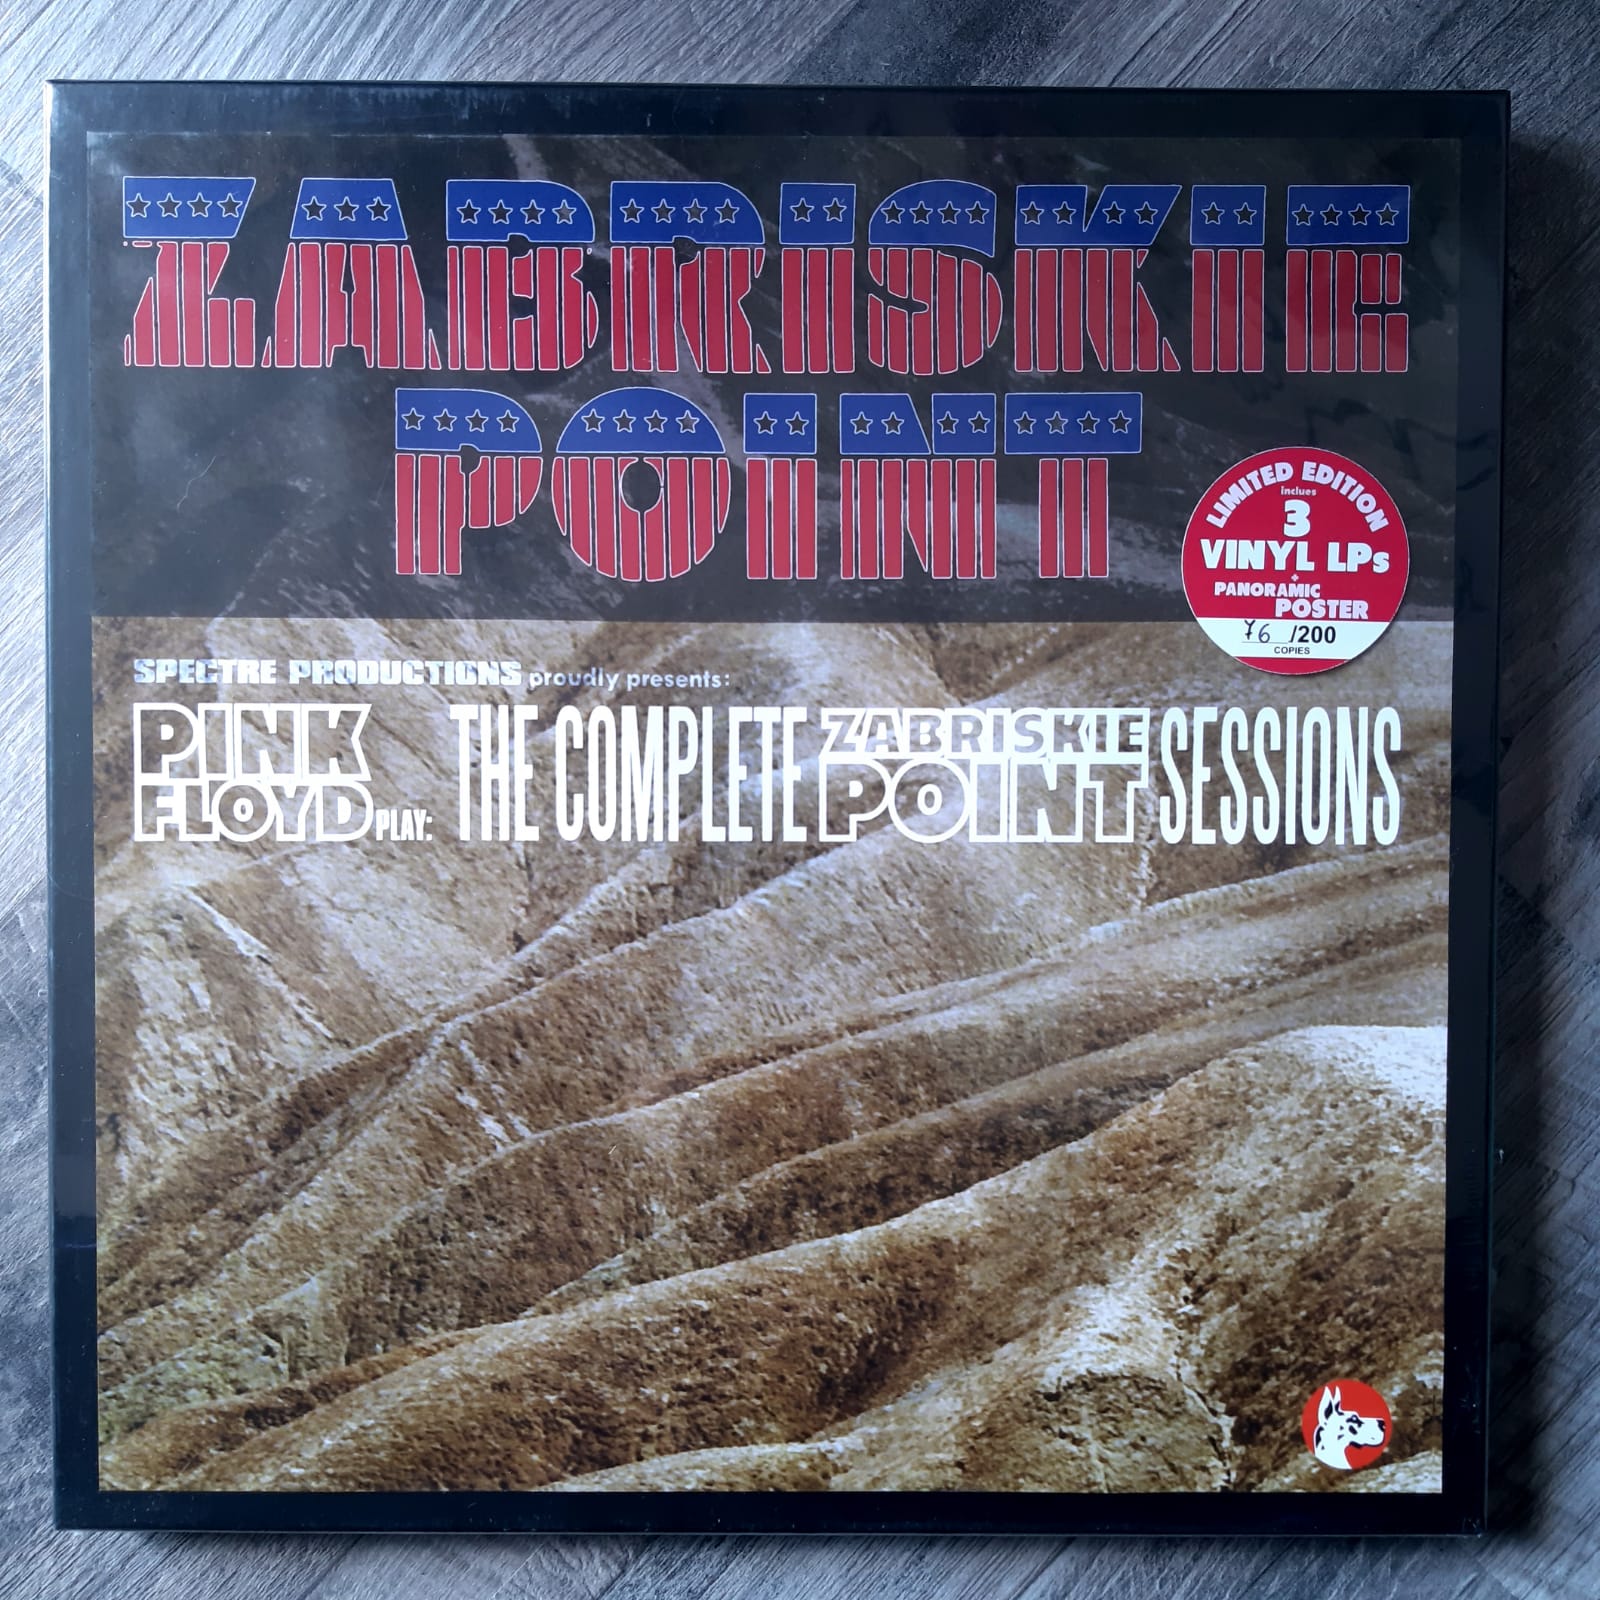 Beundringsværdig Mystisk udtale Zabriskye Point – Pink Floyd – 3LP Limited Edition | Rustblade